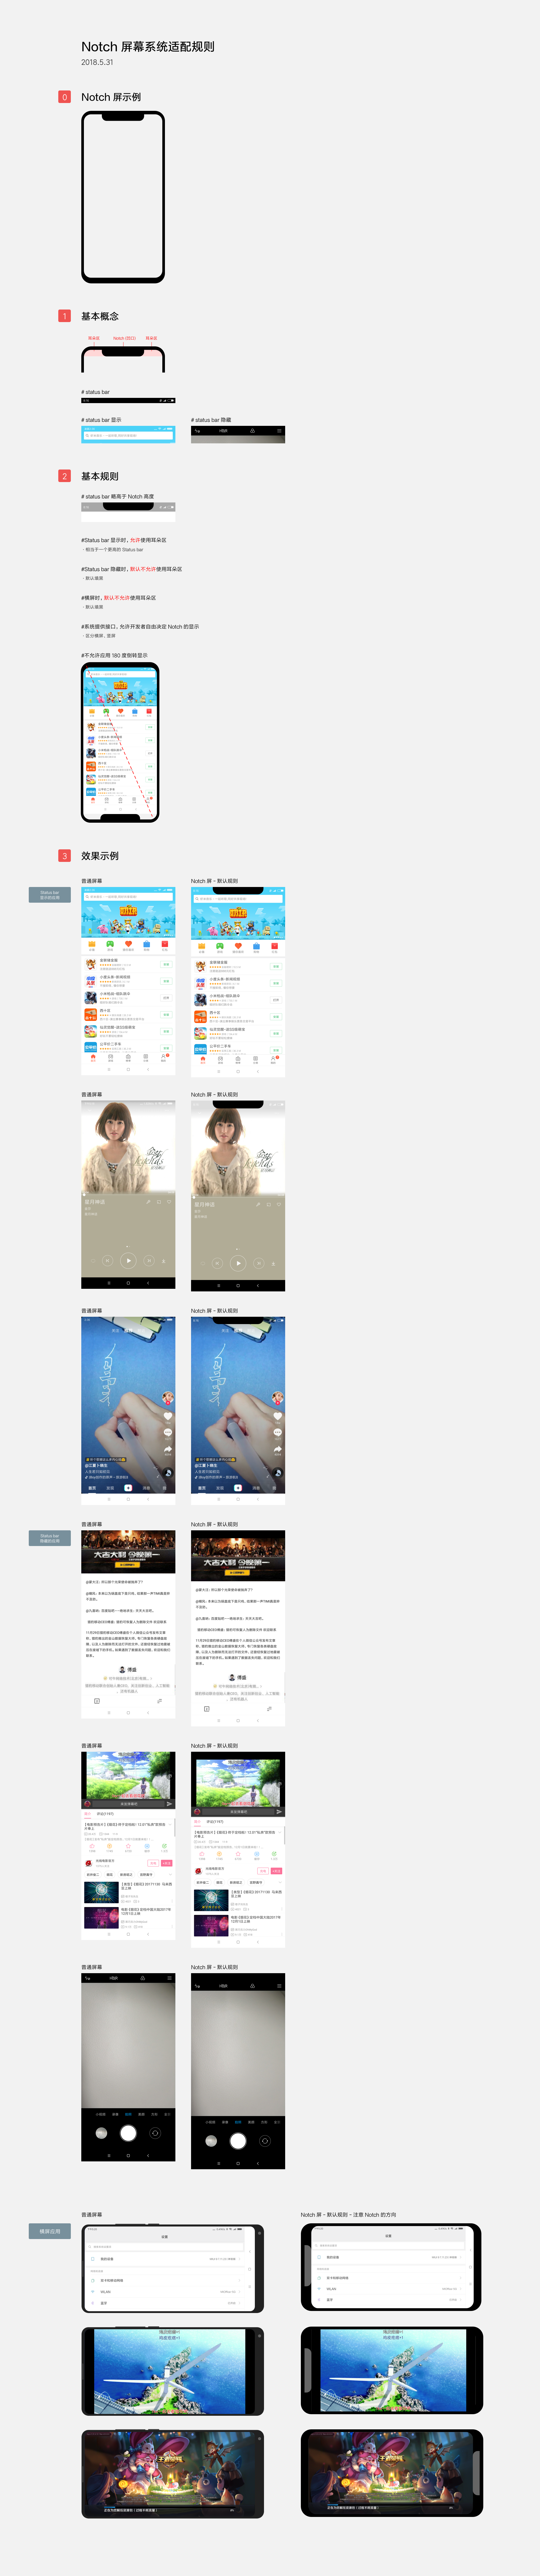 小米开发平台刘海屏、水滴屏 Android O 适配